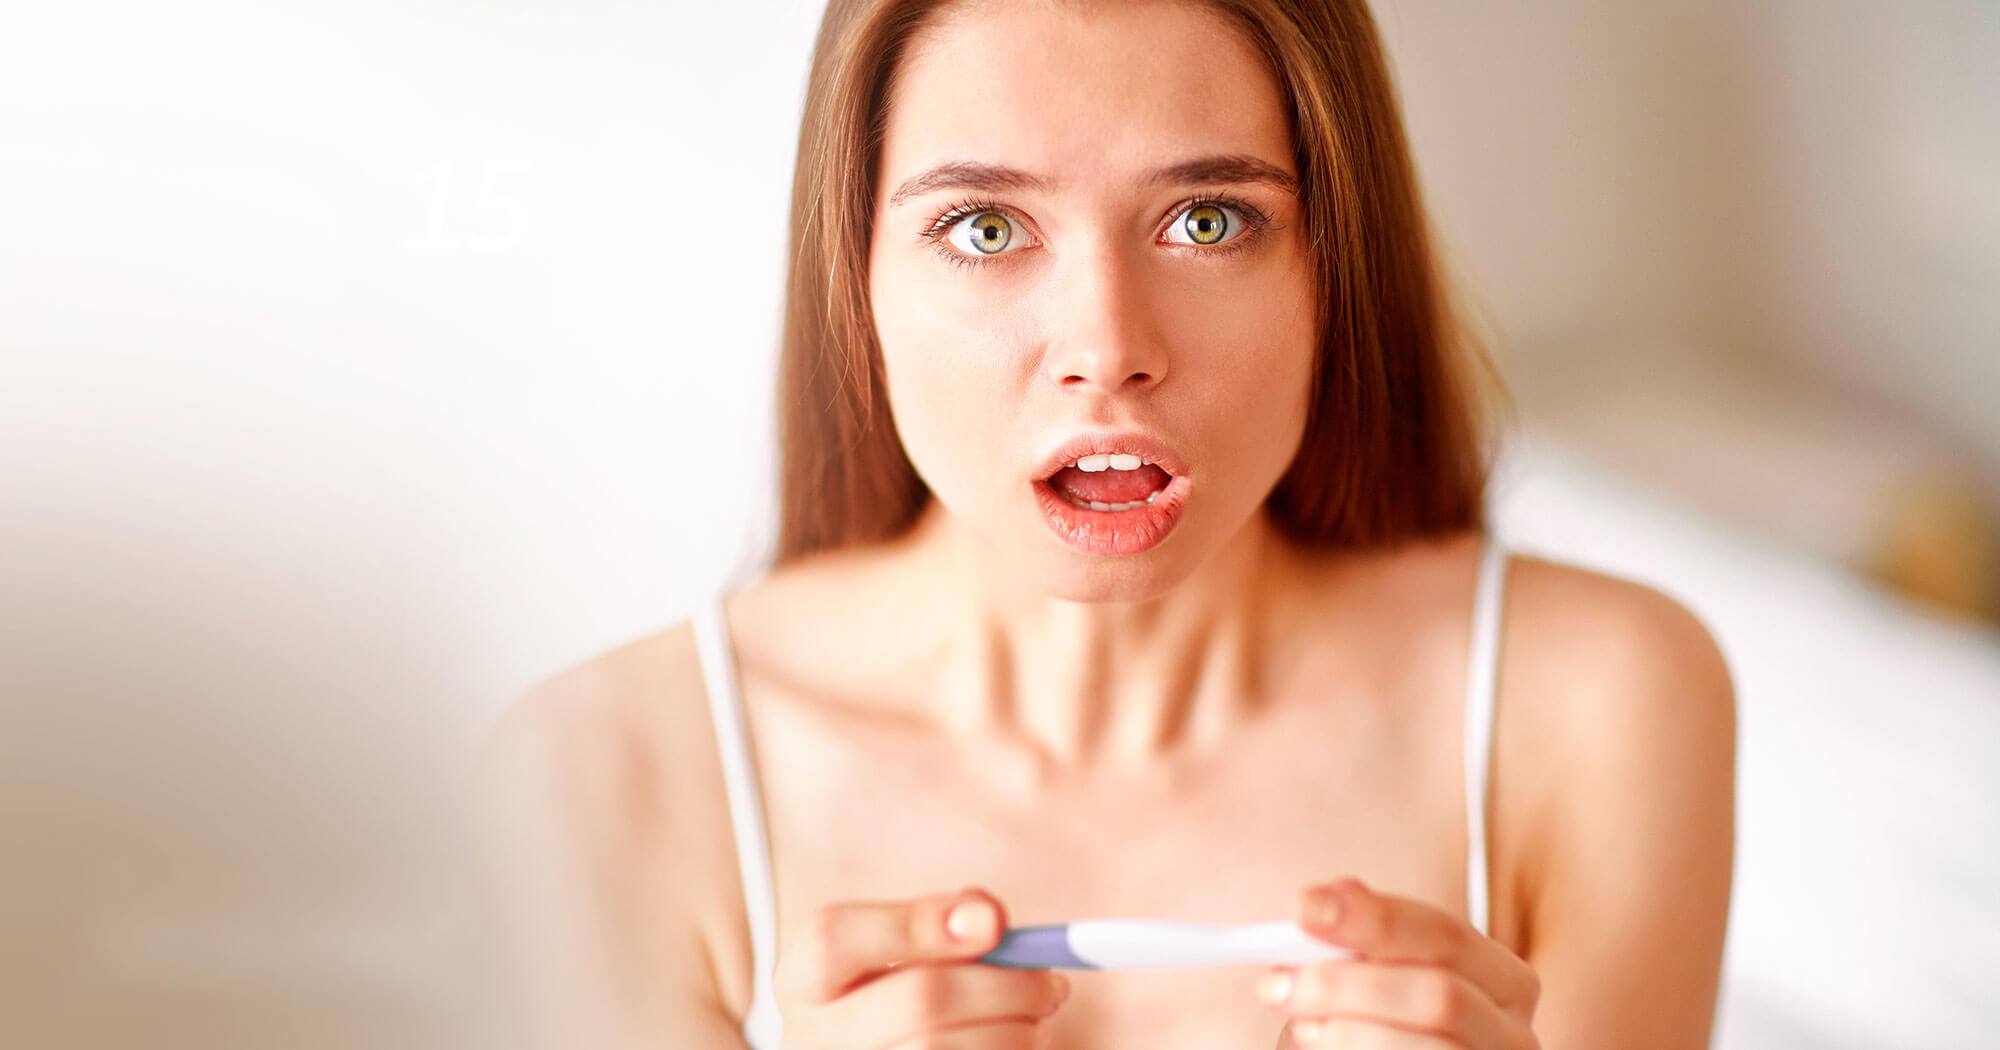 Evde Hamilelik Testi Nasıl Yapılır?